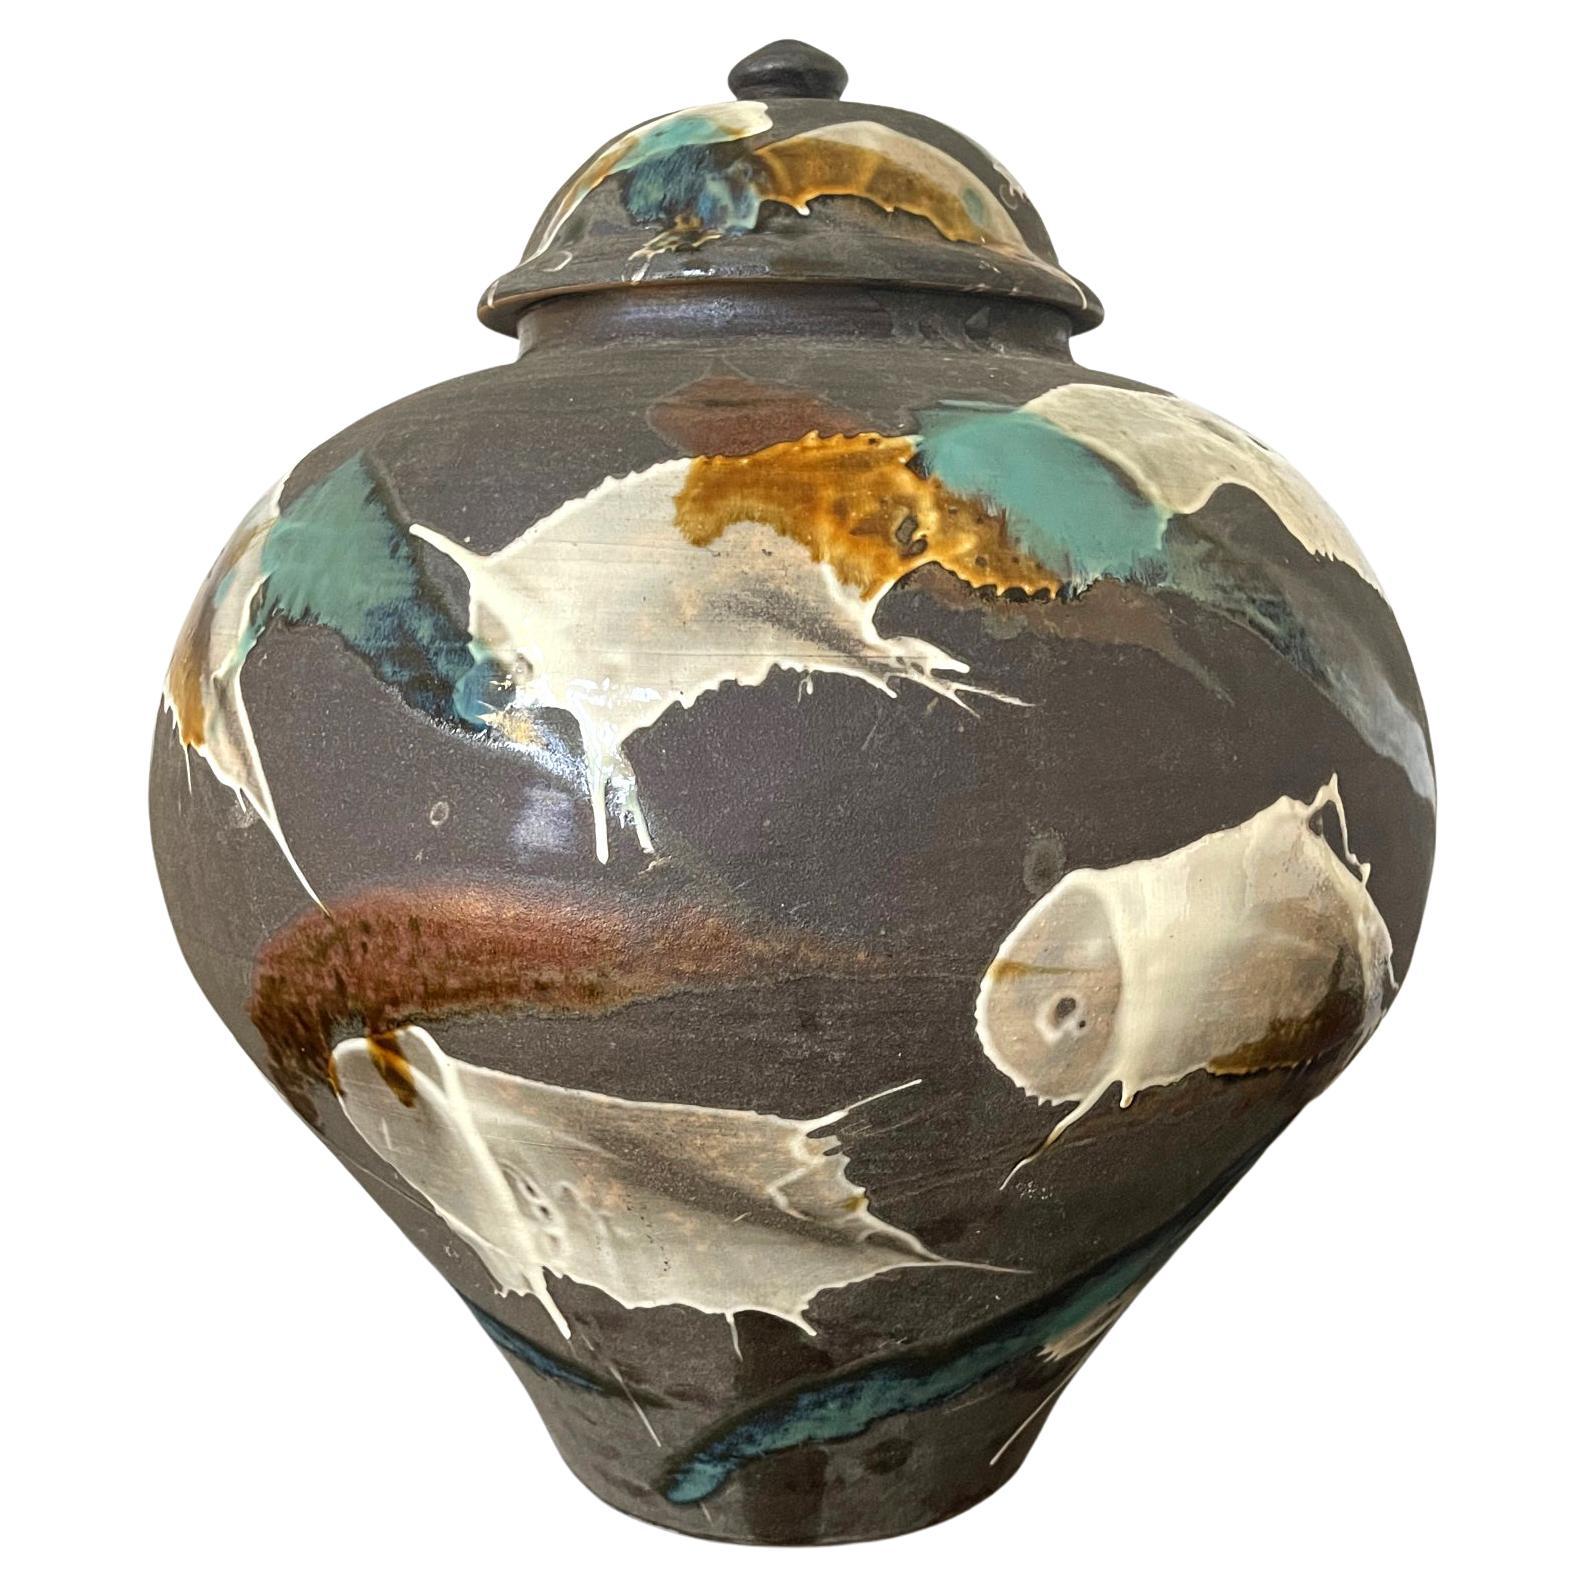 Grand pot en cramique japonaise contemporain de Onda Yaki Kiln